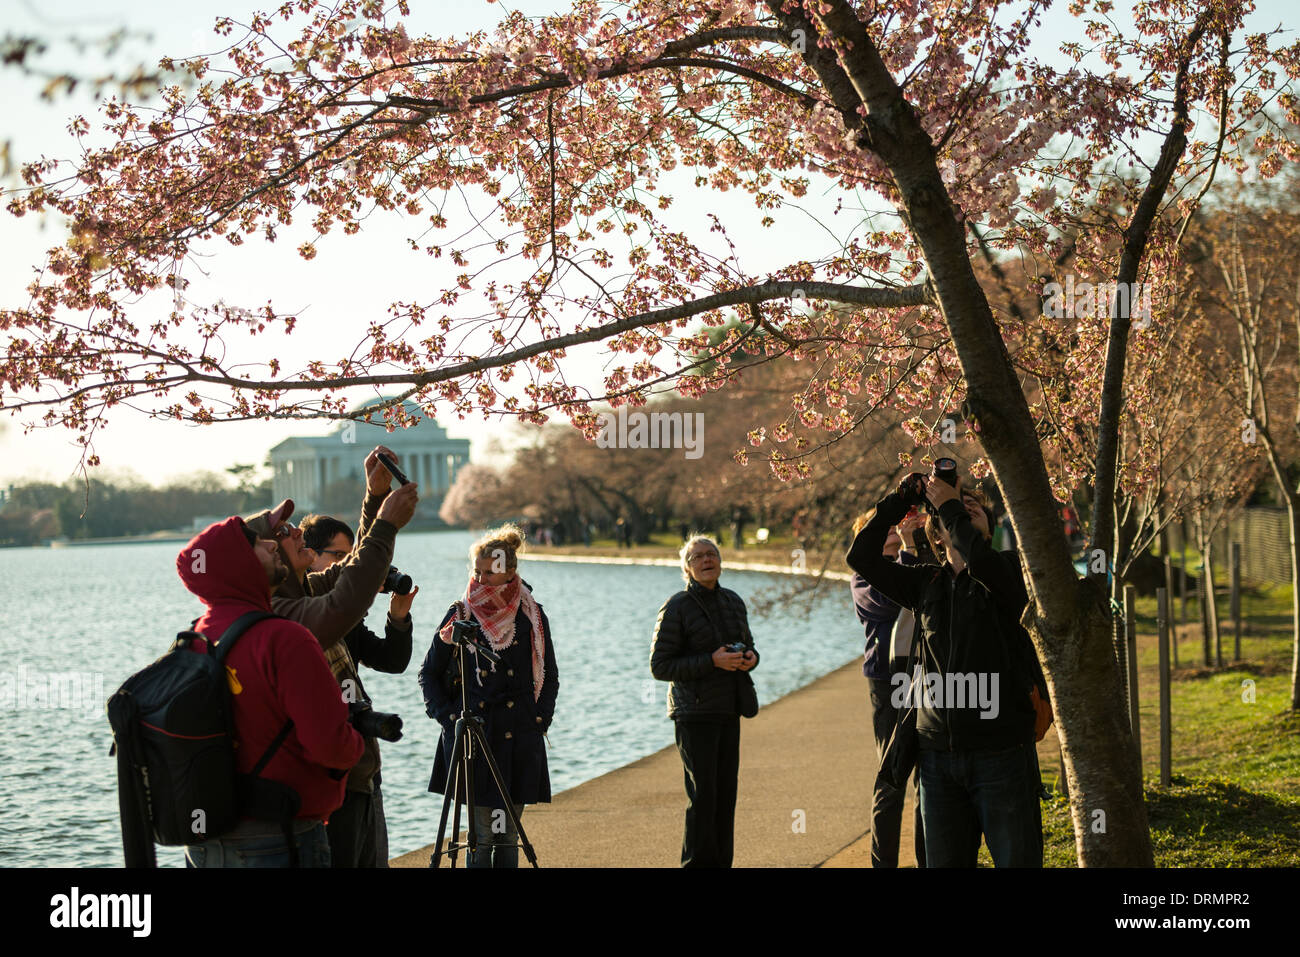 WASHINGTON DC, USA - La floraison de près de 1 700 cerisiers en fleurs autour du bassin, dont certains sont vieux de plus d'un siècle, est un événement annuel à Washington's spring et réunit des centaines de milliers de touristes à la ville. Banque D'Images